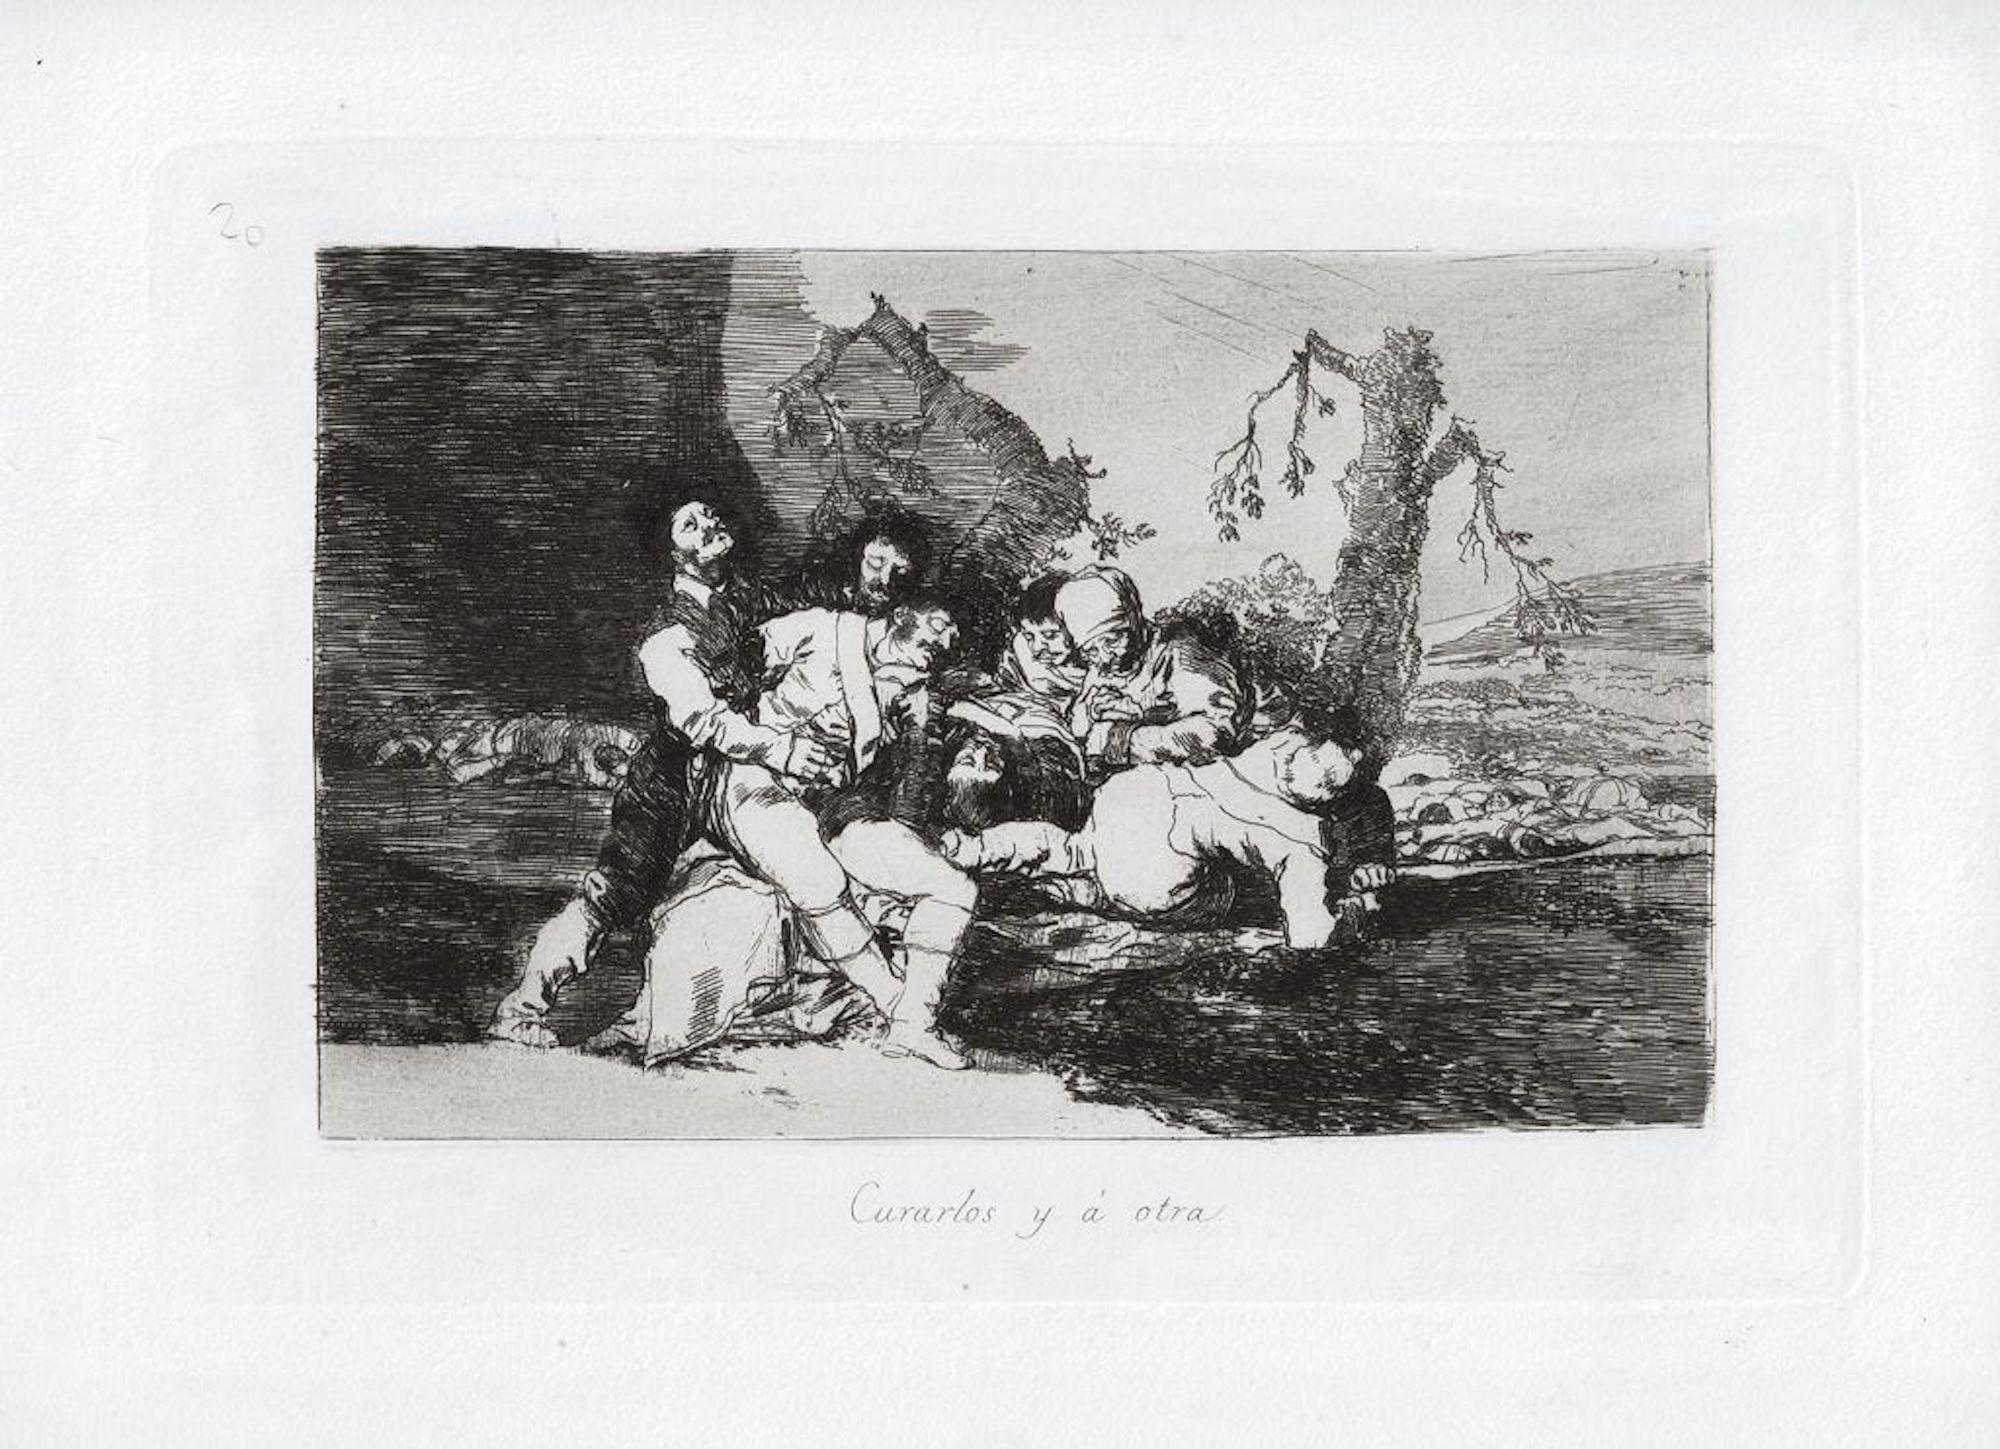 Artistics y a otra est une œuvre d'art originale réalisée par le grand artiste espagnol Francisco Goya en 1810. Gravure originale sur papier.

L'œuvre appartient à la célèbre collection d'estampes Los Desastres de la Guerra réalisée pendant les